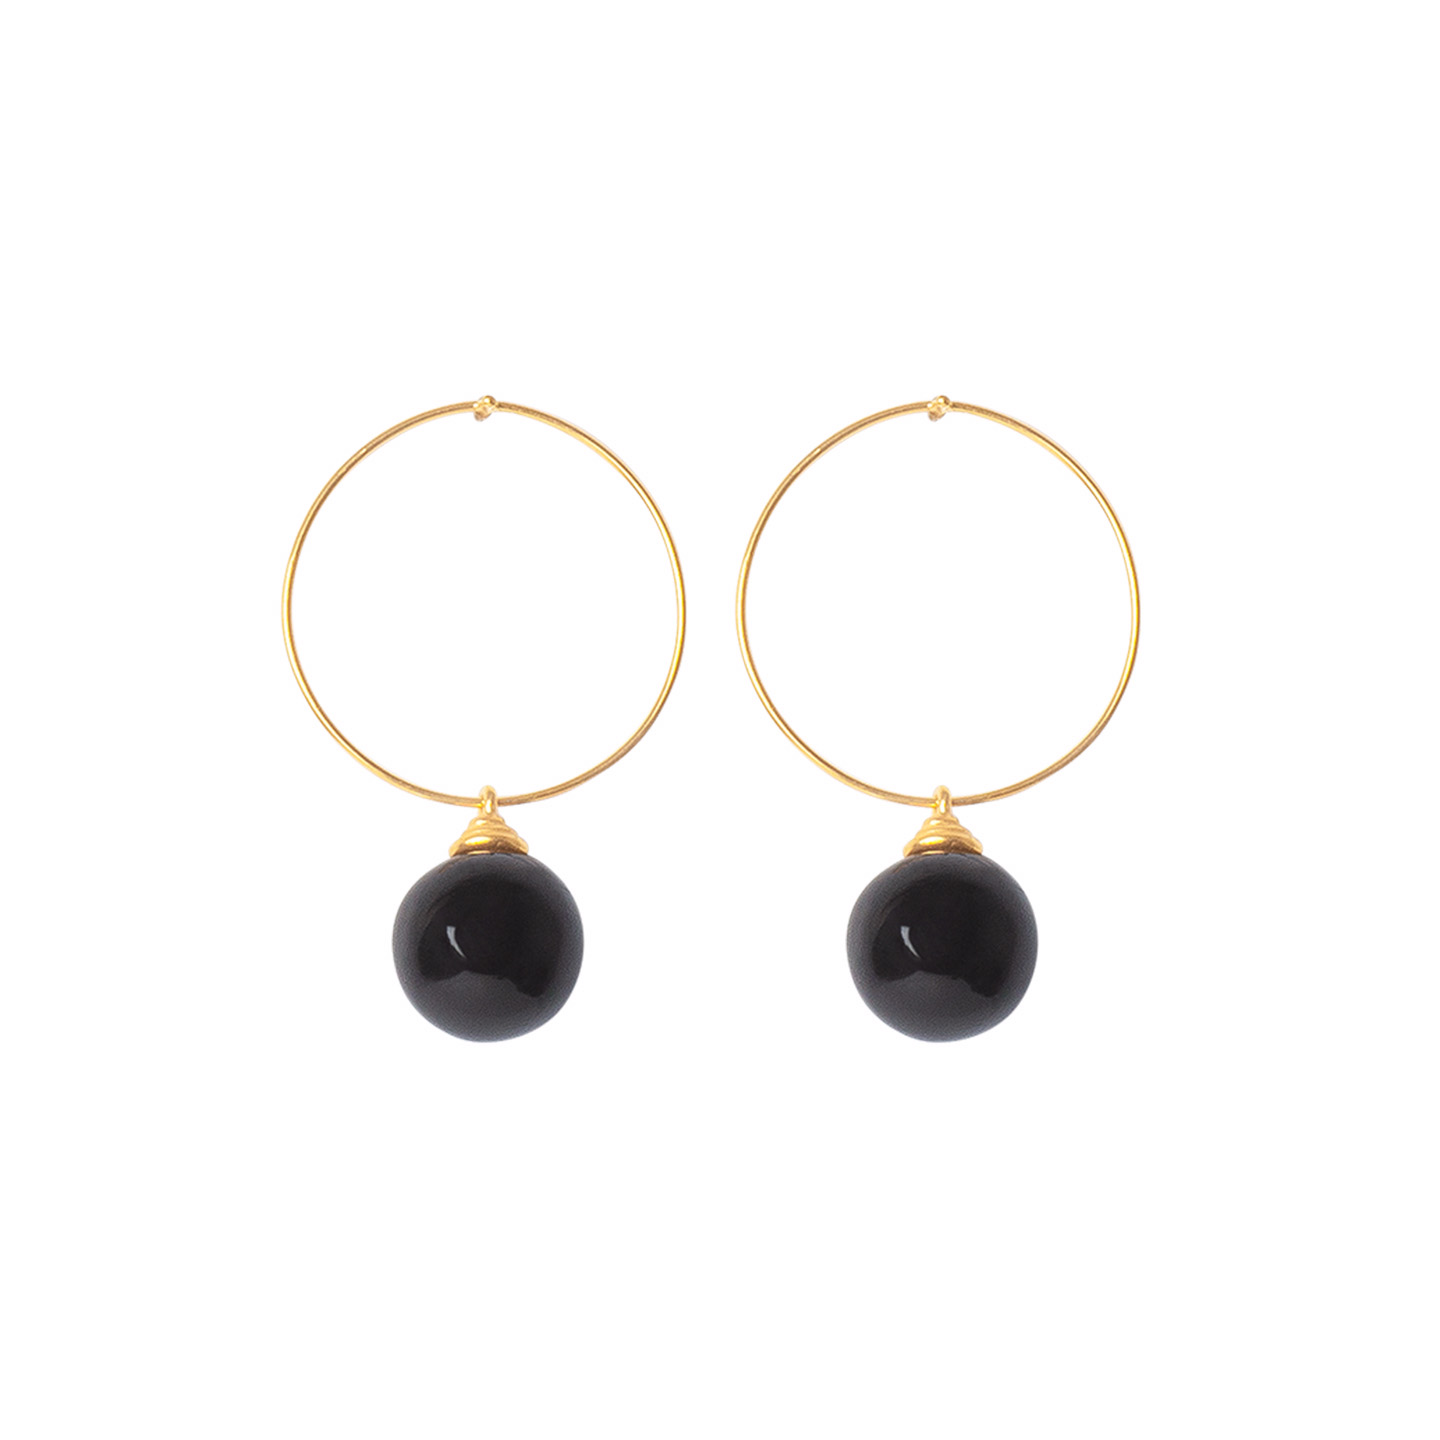 Custom wholesale Gold plated sterling silver pair of hoop earrings factory OEM/ODM Jewelry